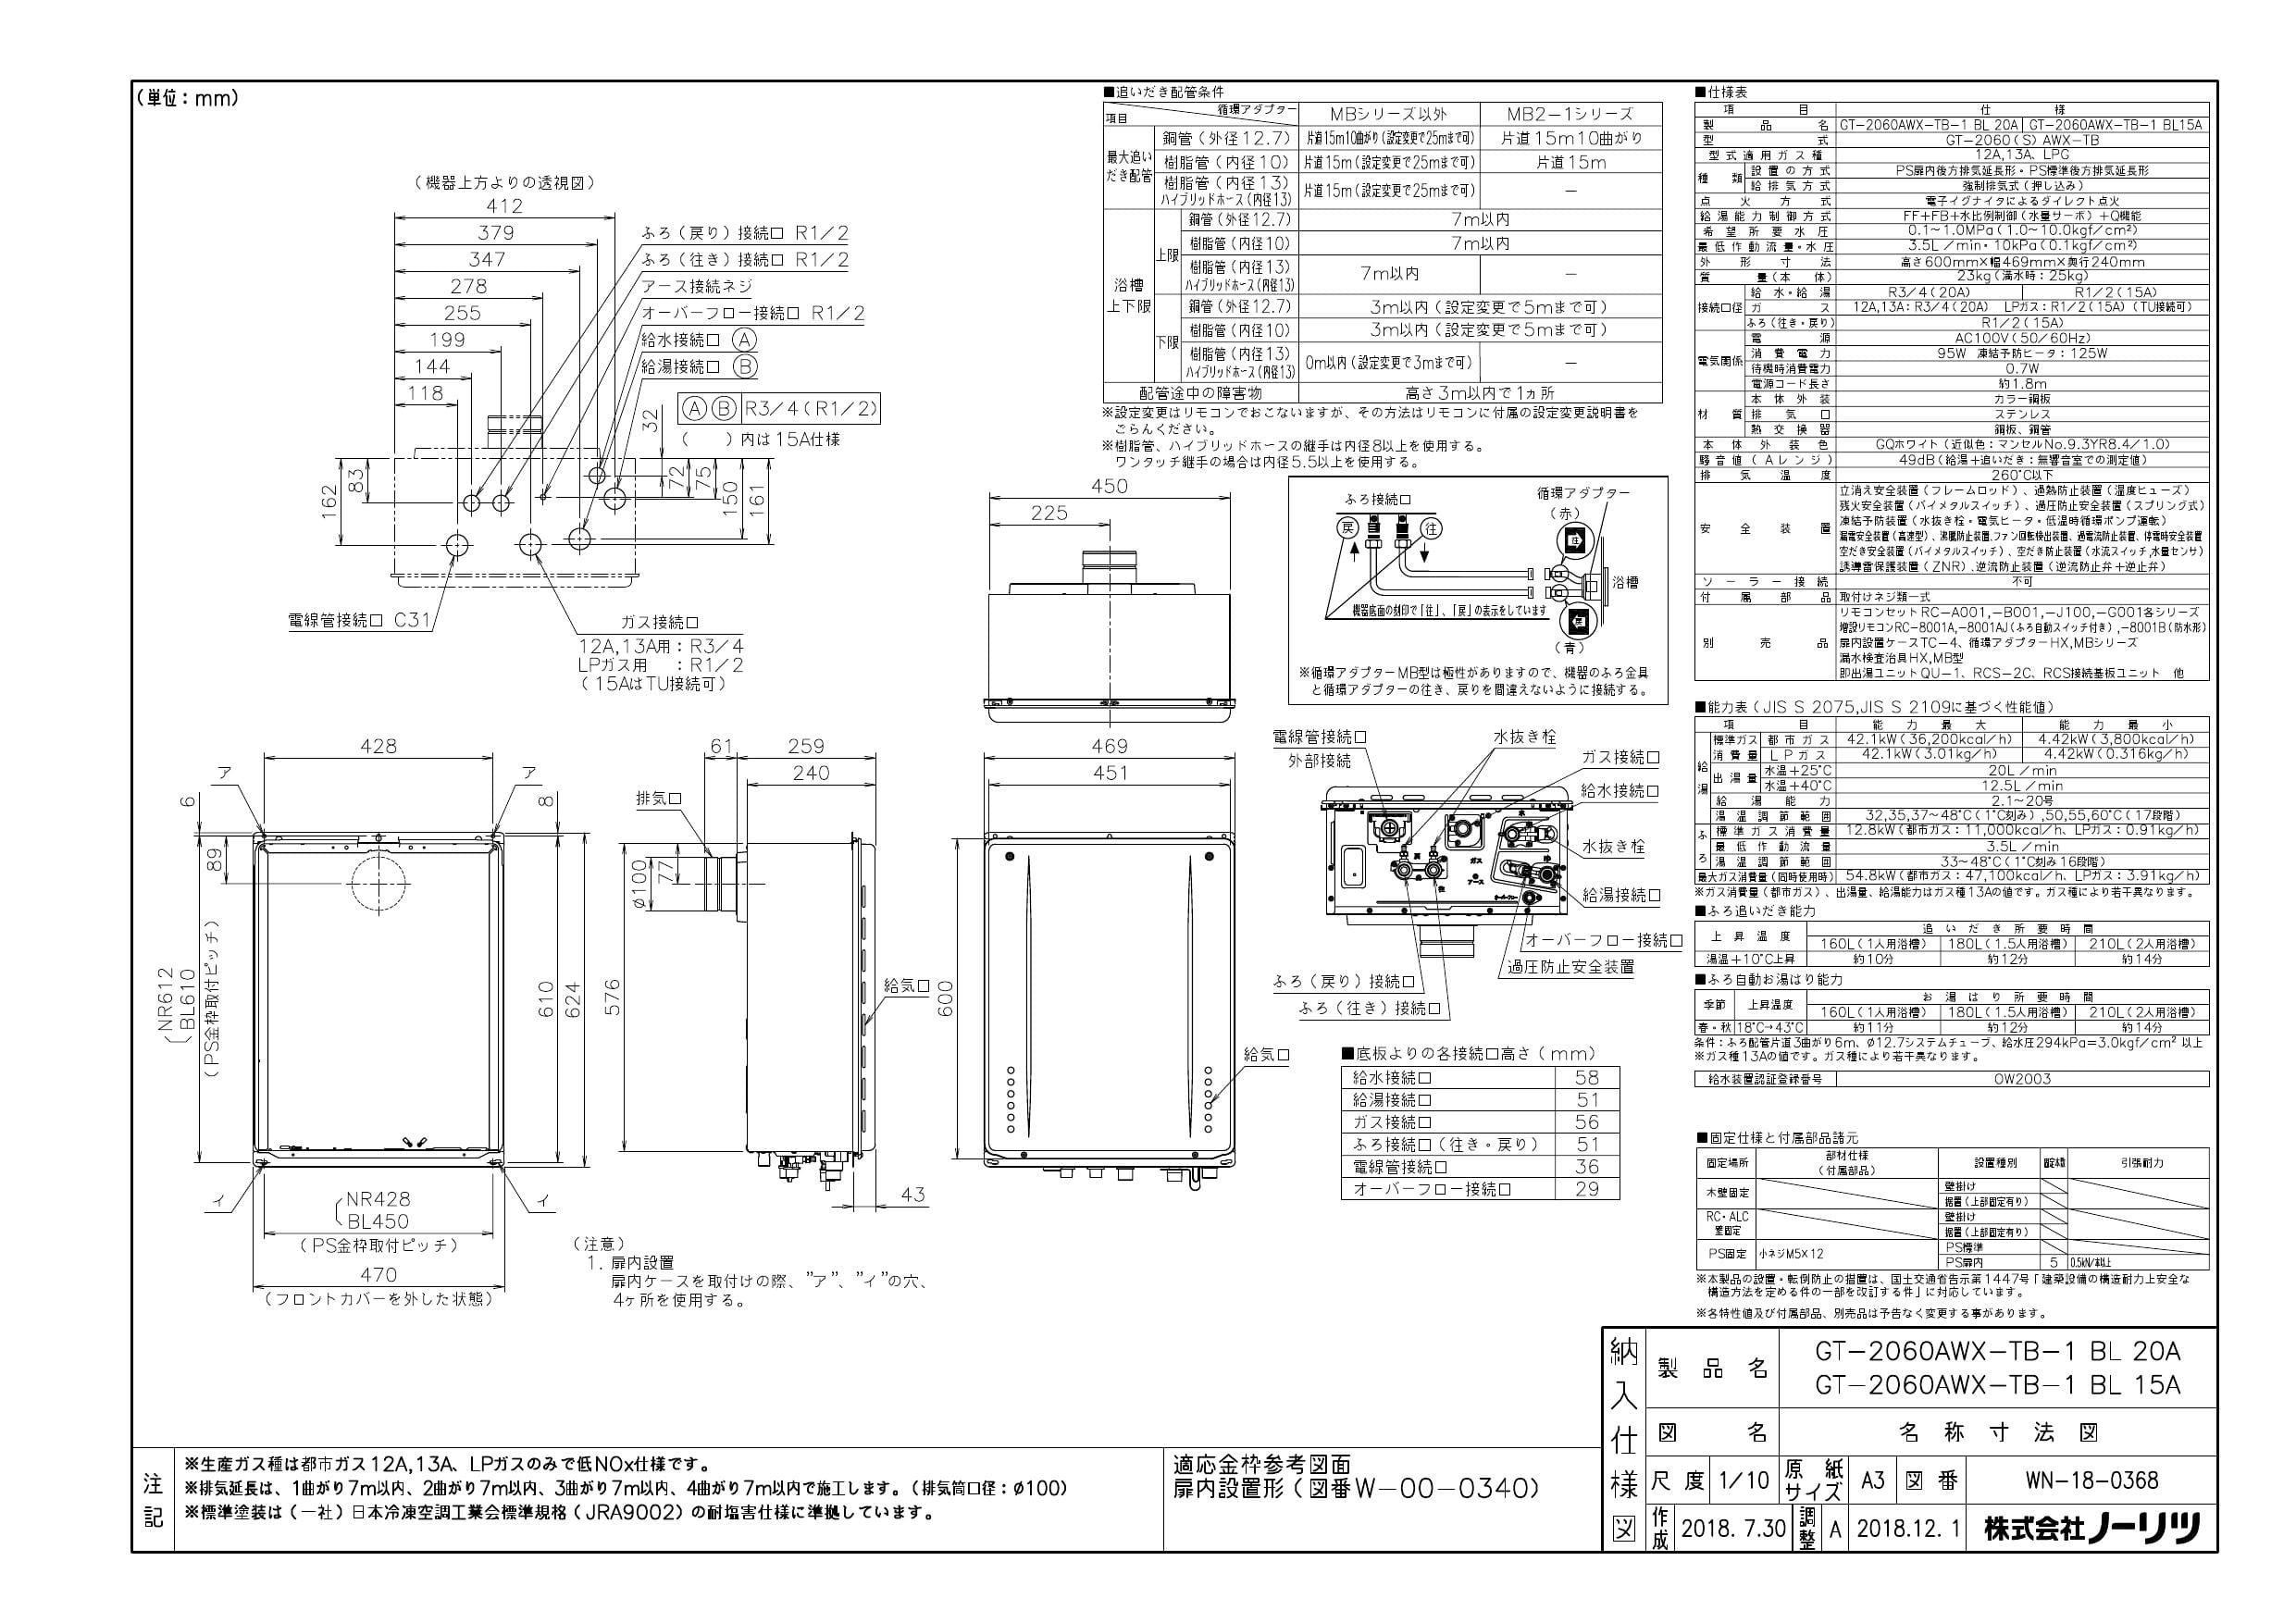 ノーリツ GT-2060AWX-TB-1 BL納入仕様図 | 通販 プロストア ダイレクト